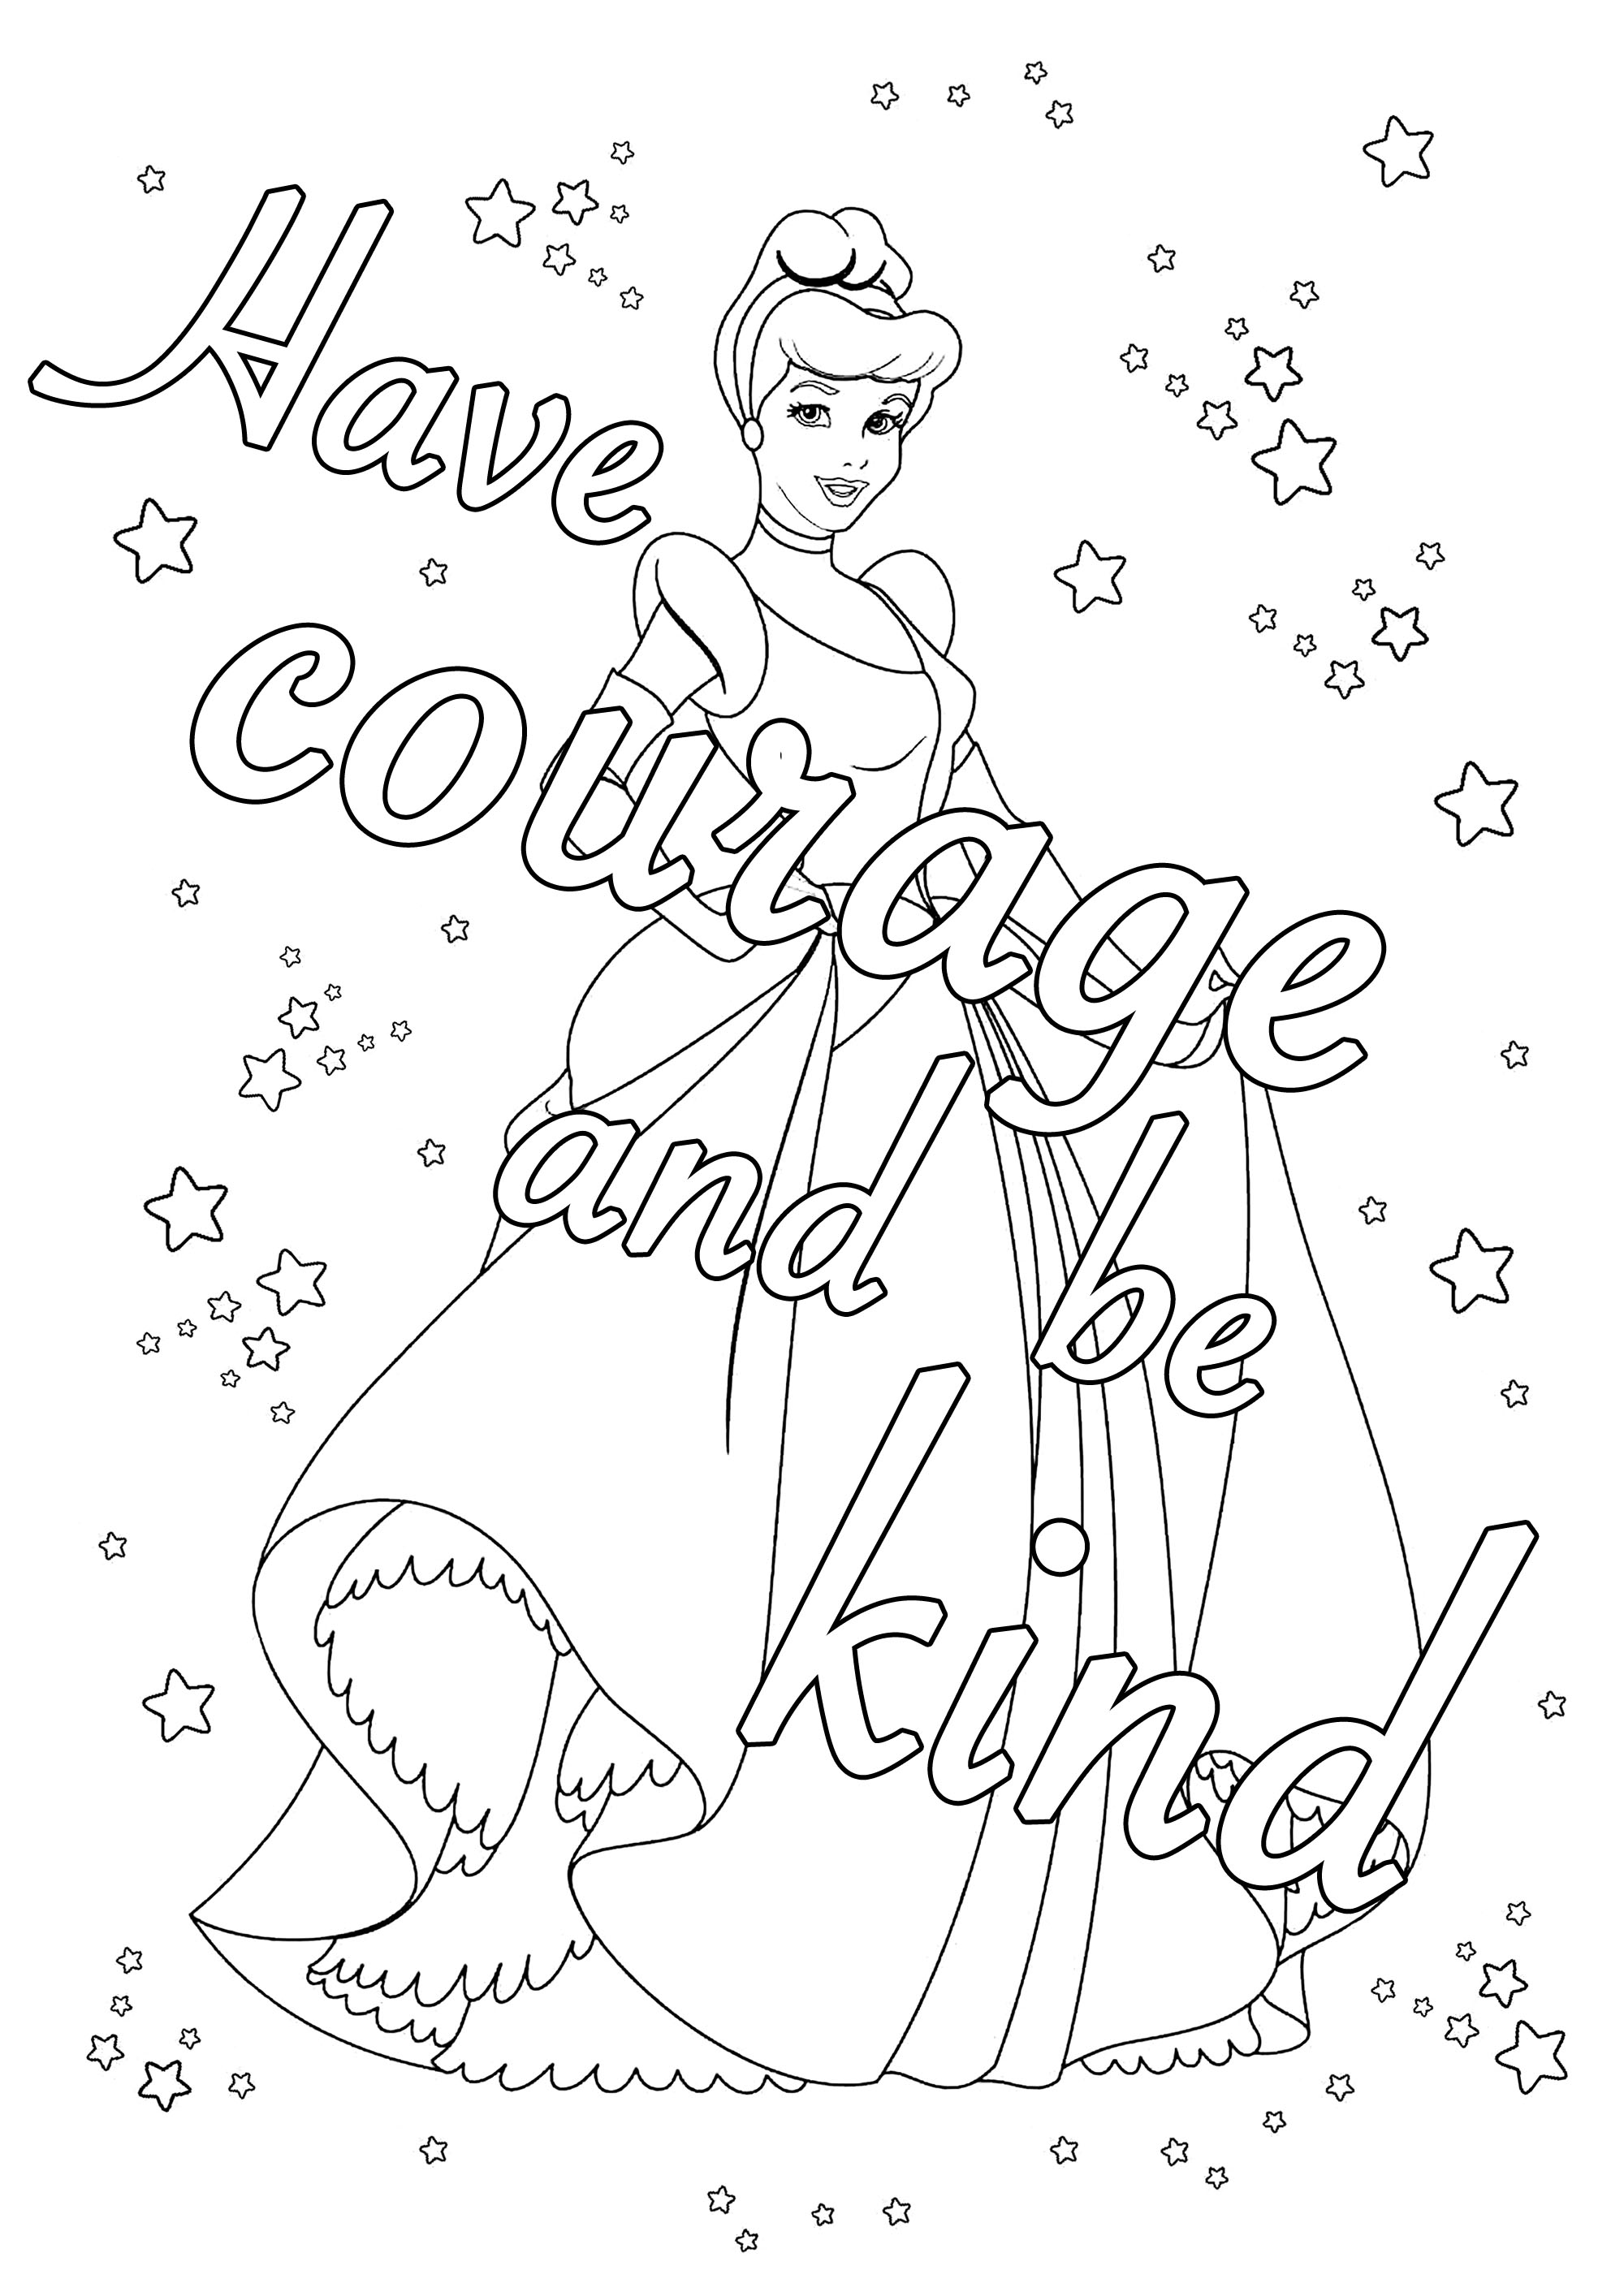 Pagina da colorare con la citazione 'Abbi coraggio e sii gentile', dalla madre di Ella in Cenerentola